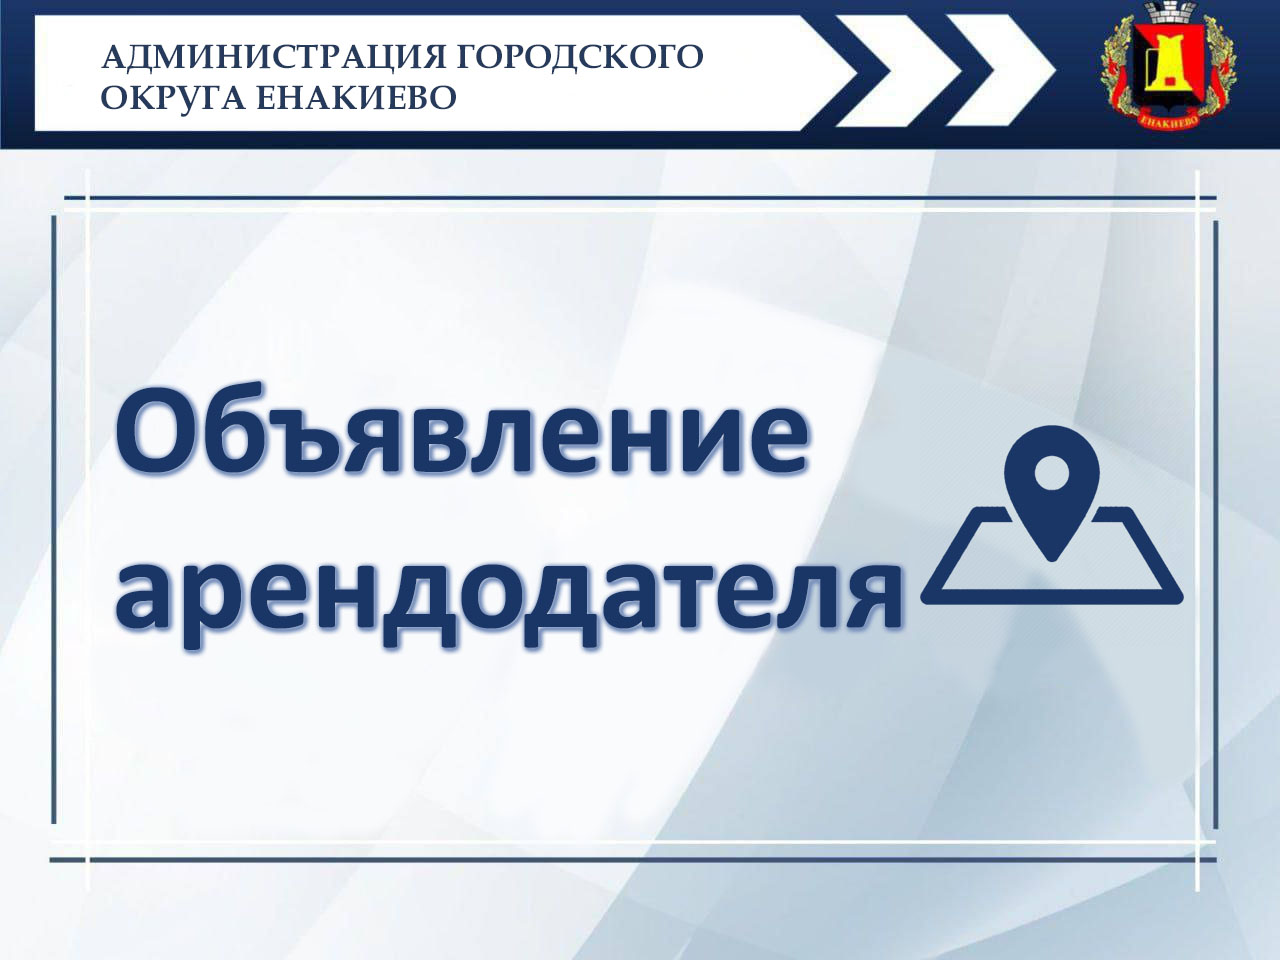 Объявление арендодателя – администрации городского округа Енакиево.